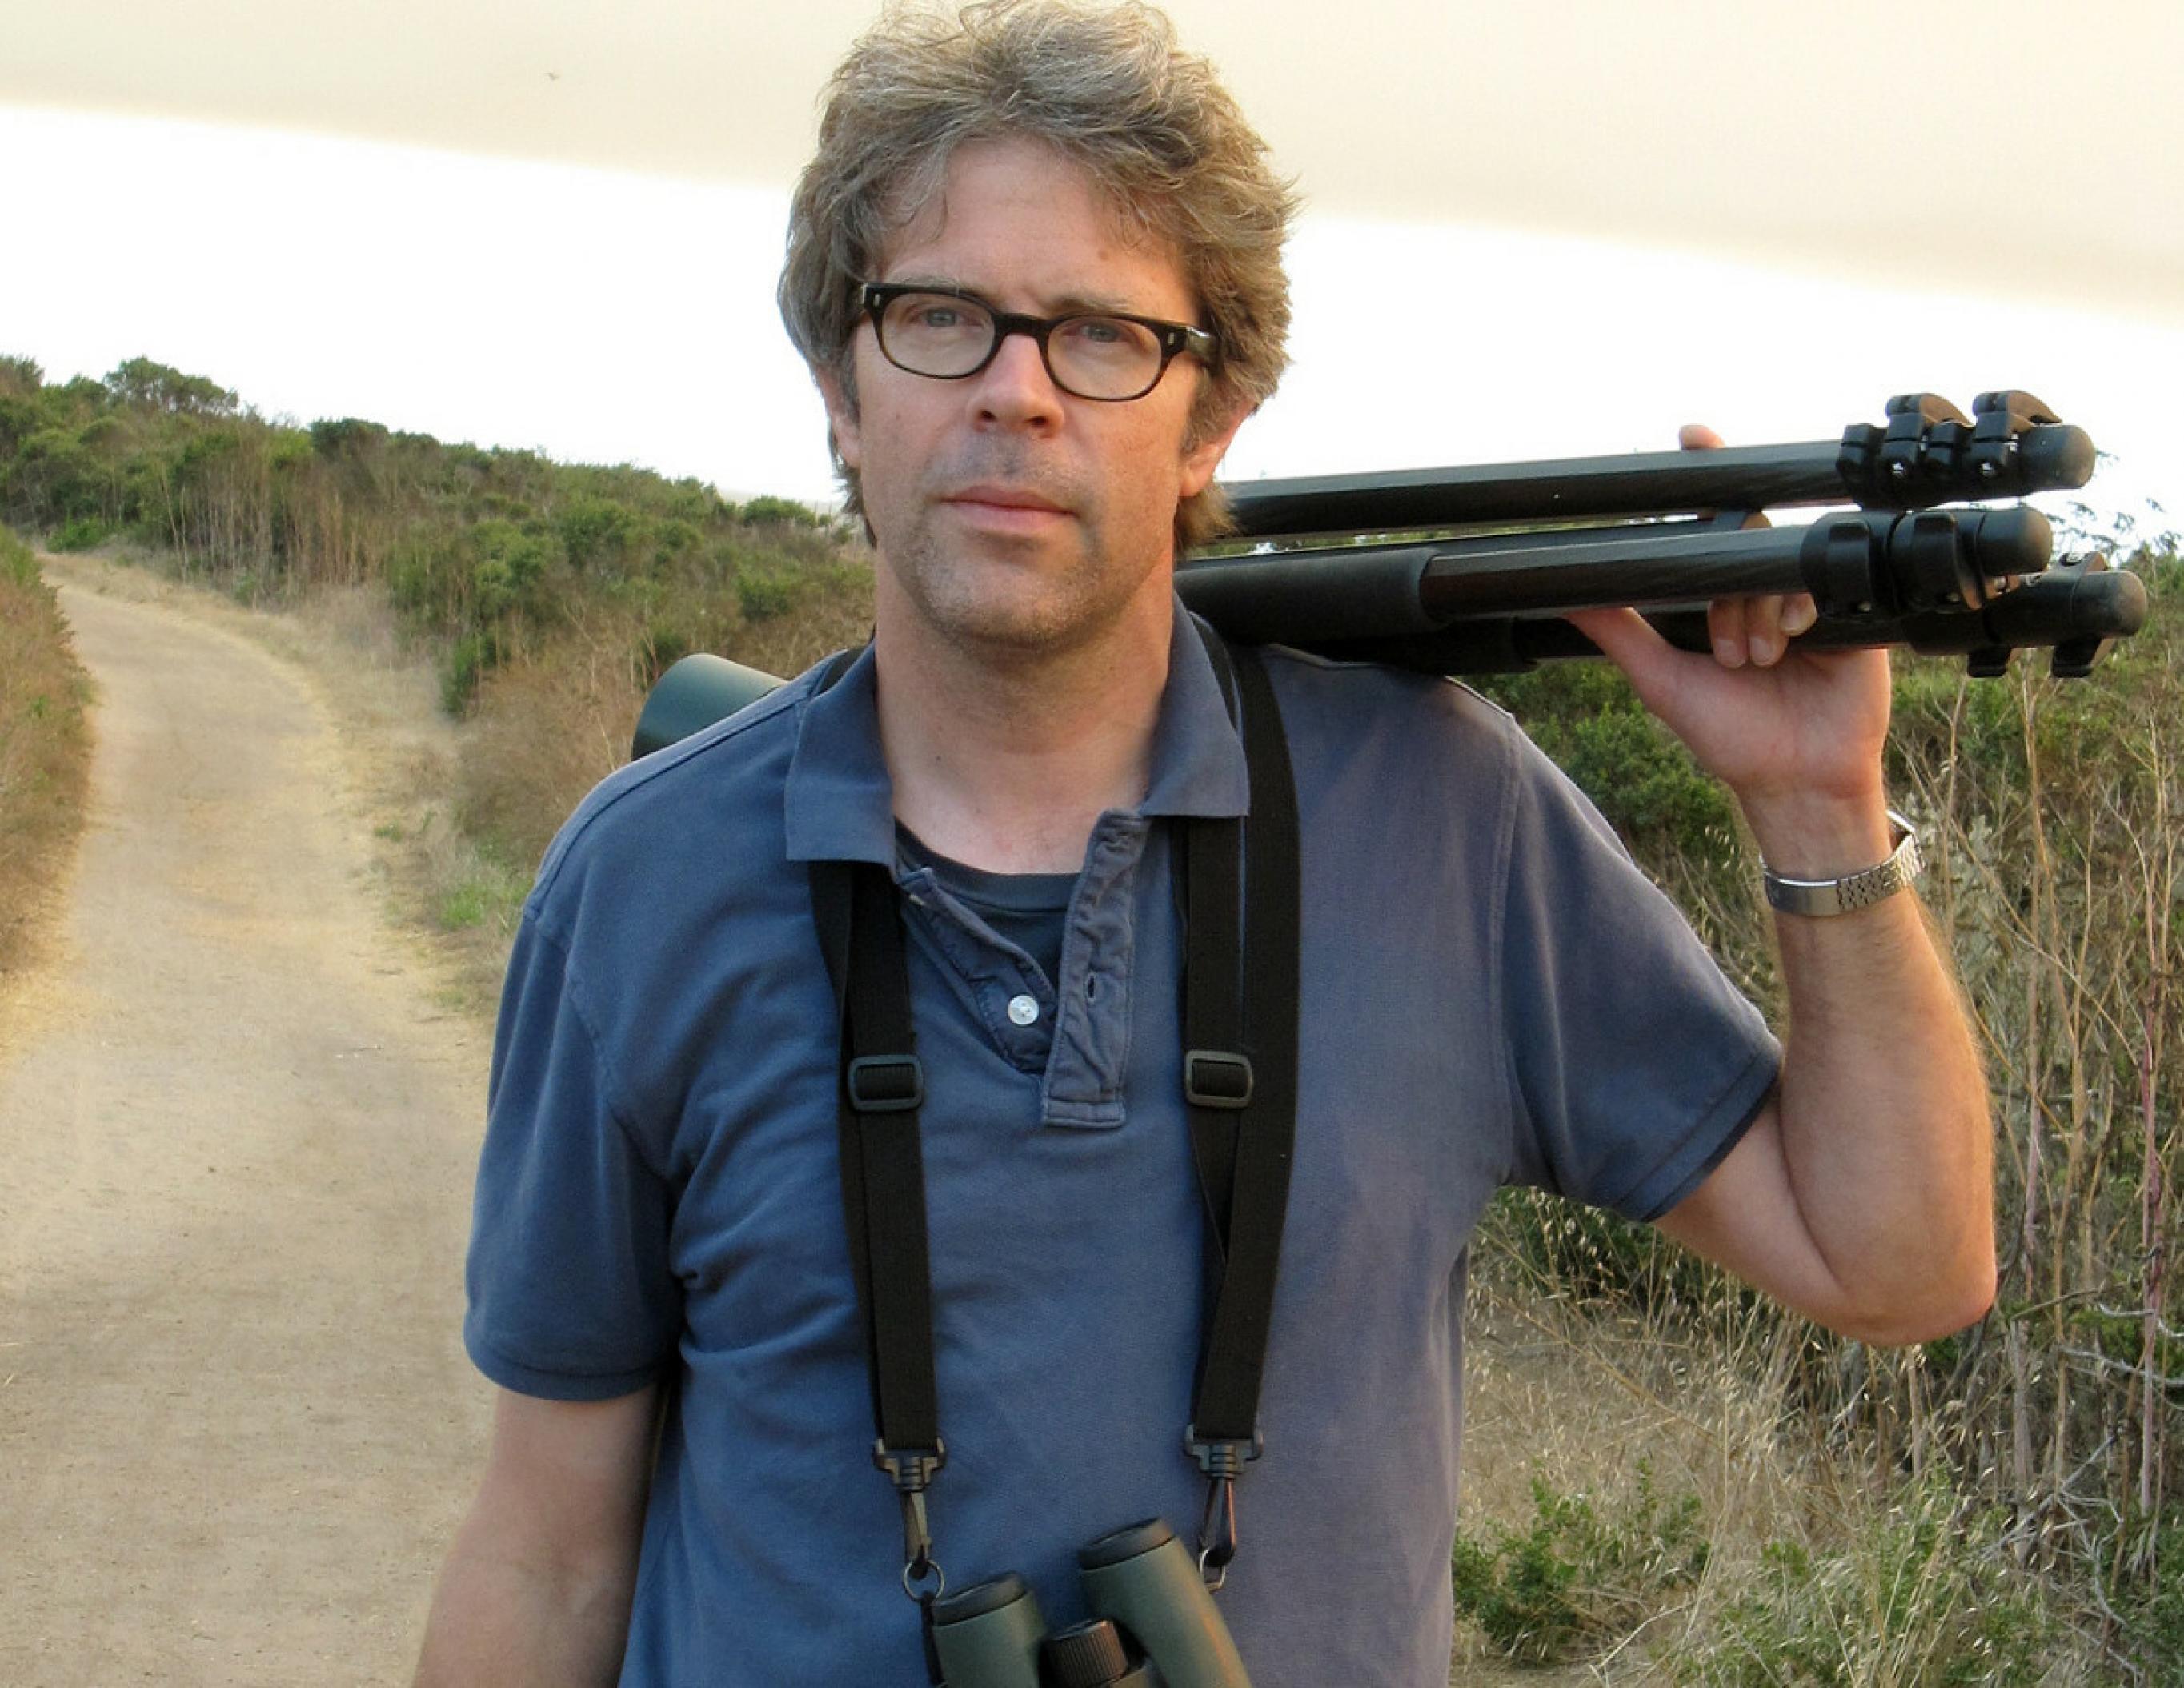 Jonathan Franzen mit Stativ auf der Schulter und einem Fernglas umgehängt in einer Hügellandschaft stehend.